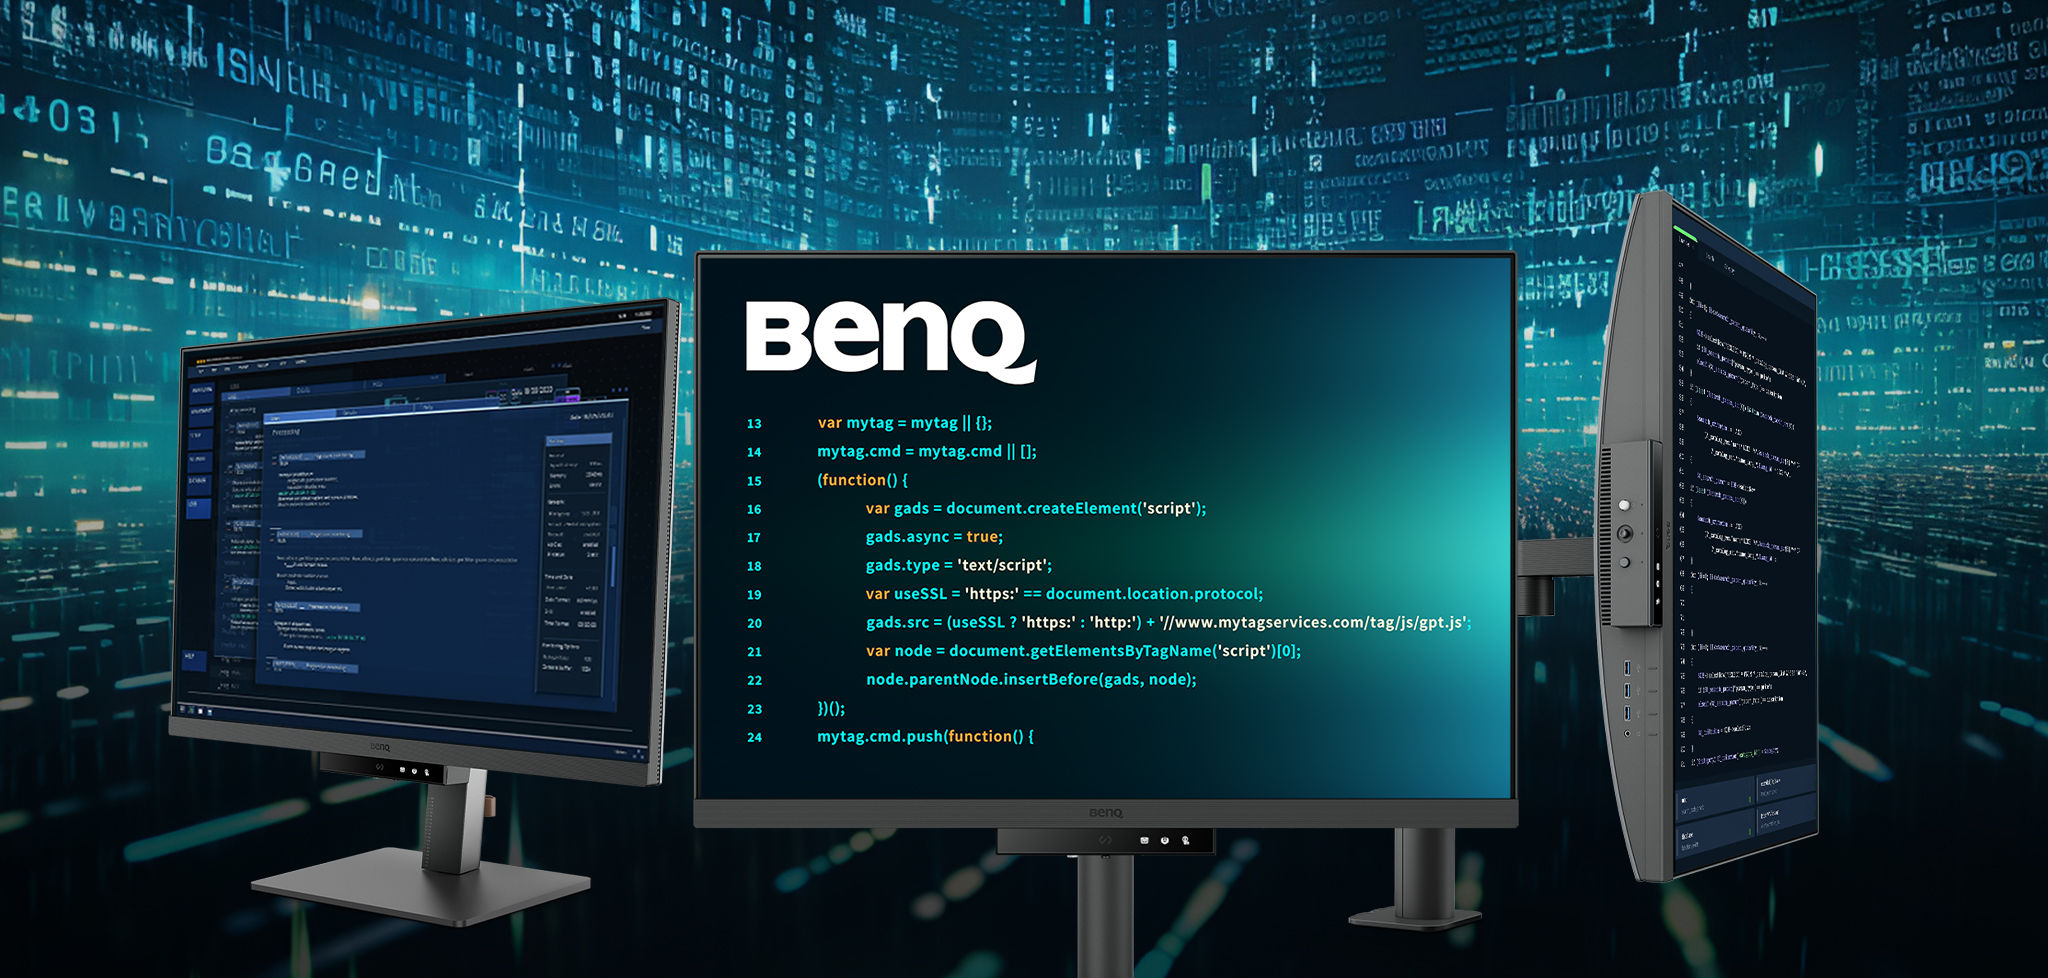 Společnost BenQ při vývoji svých produktů upřednostňuje ekologické postupy, což zdůrazňuje náš závazek k udržitelnosti. Monitory BenQ pro programátory využívají ekologické technologie, recyklované materiály a energeticky úsporný design.